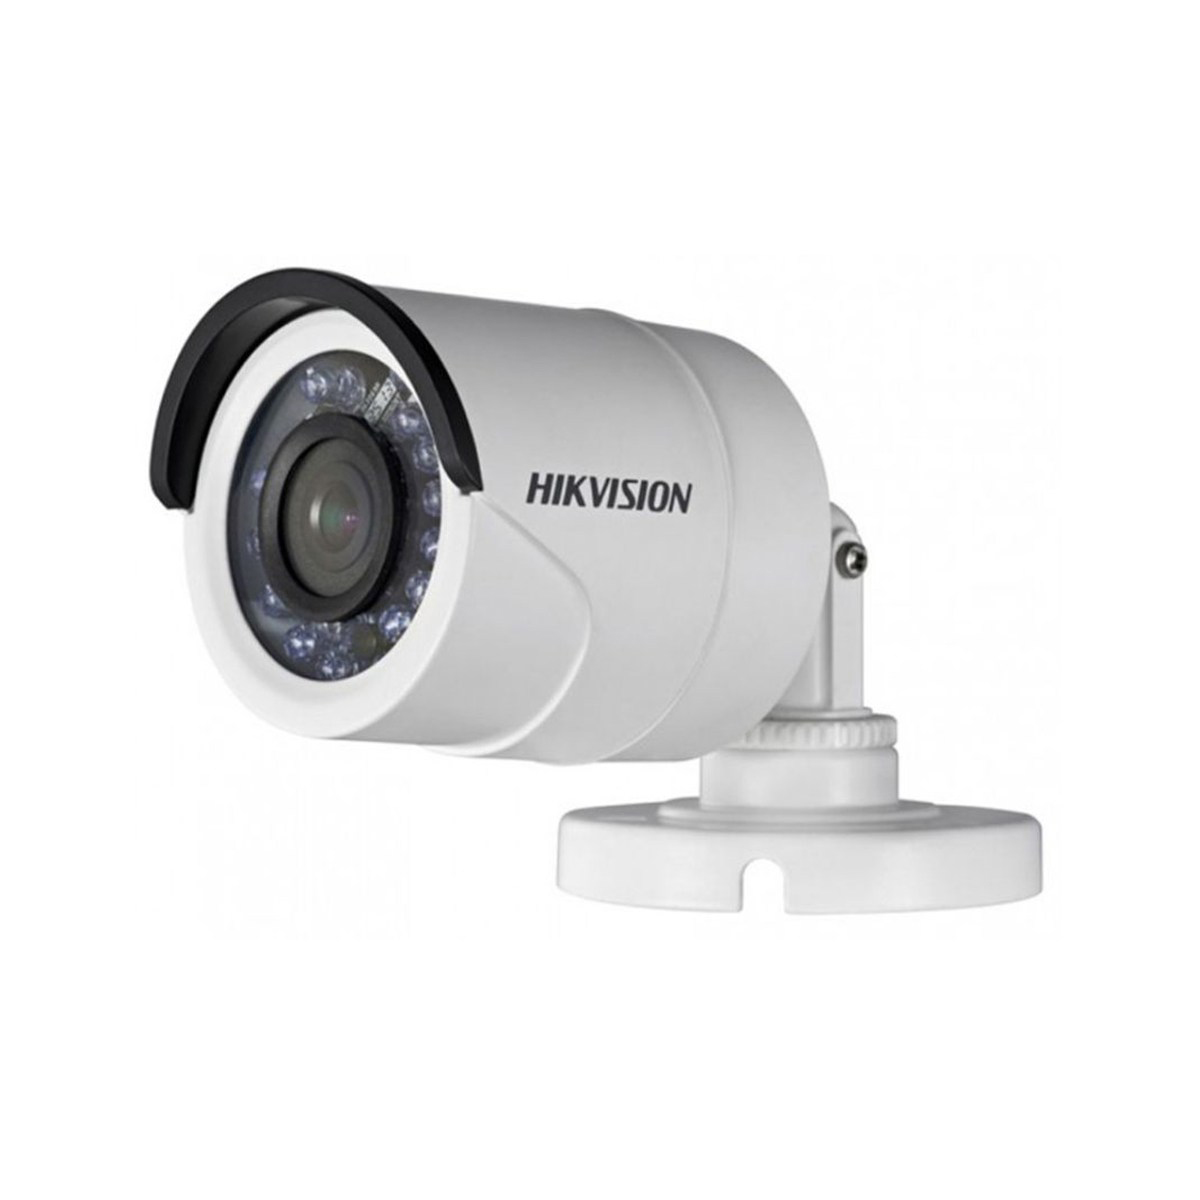 Camera  HD-TVI  hình trụ hồng ngoại 20m 2MP Hikvision DS-2CE16D0T-IRP - Hàng Nhập Khẩu